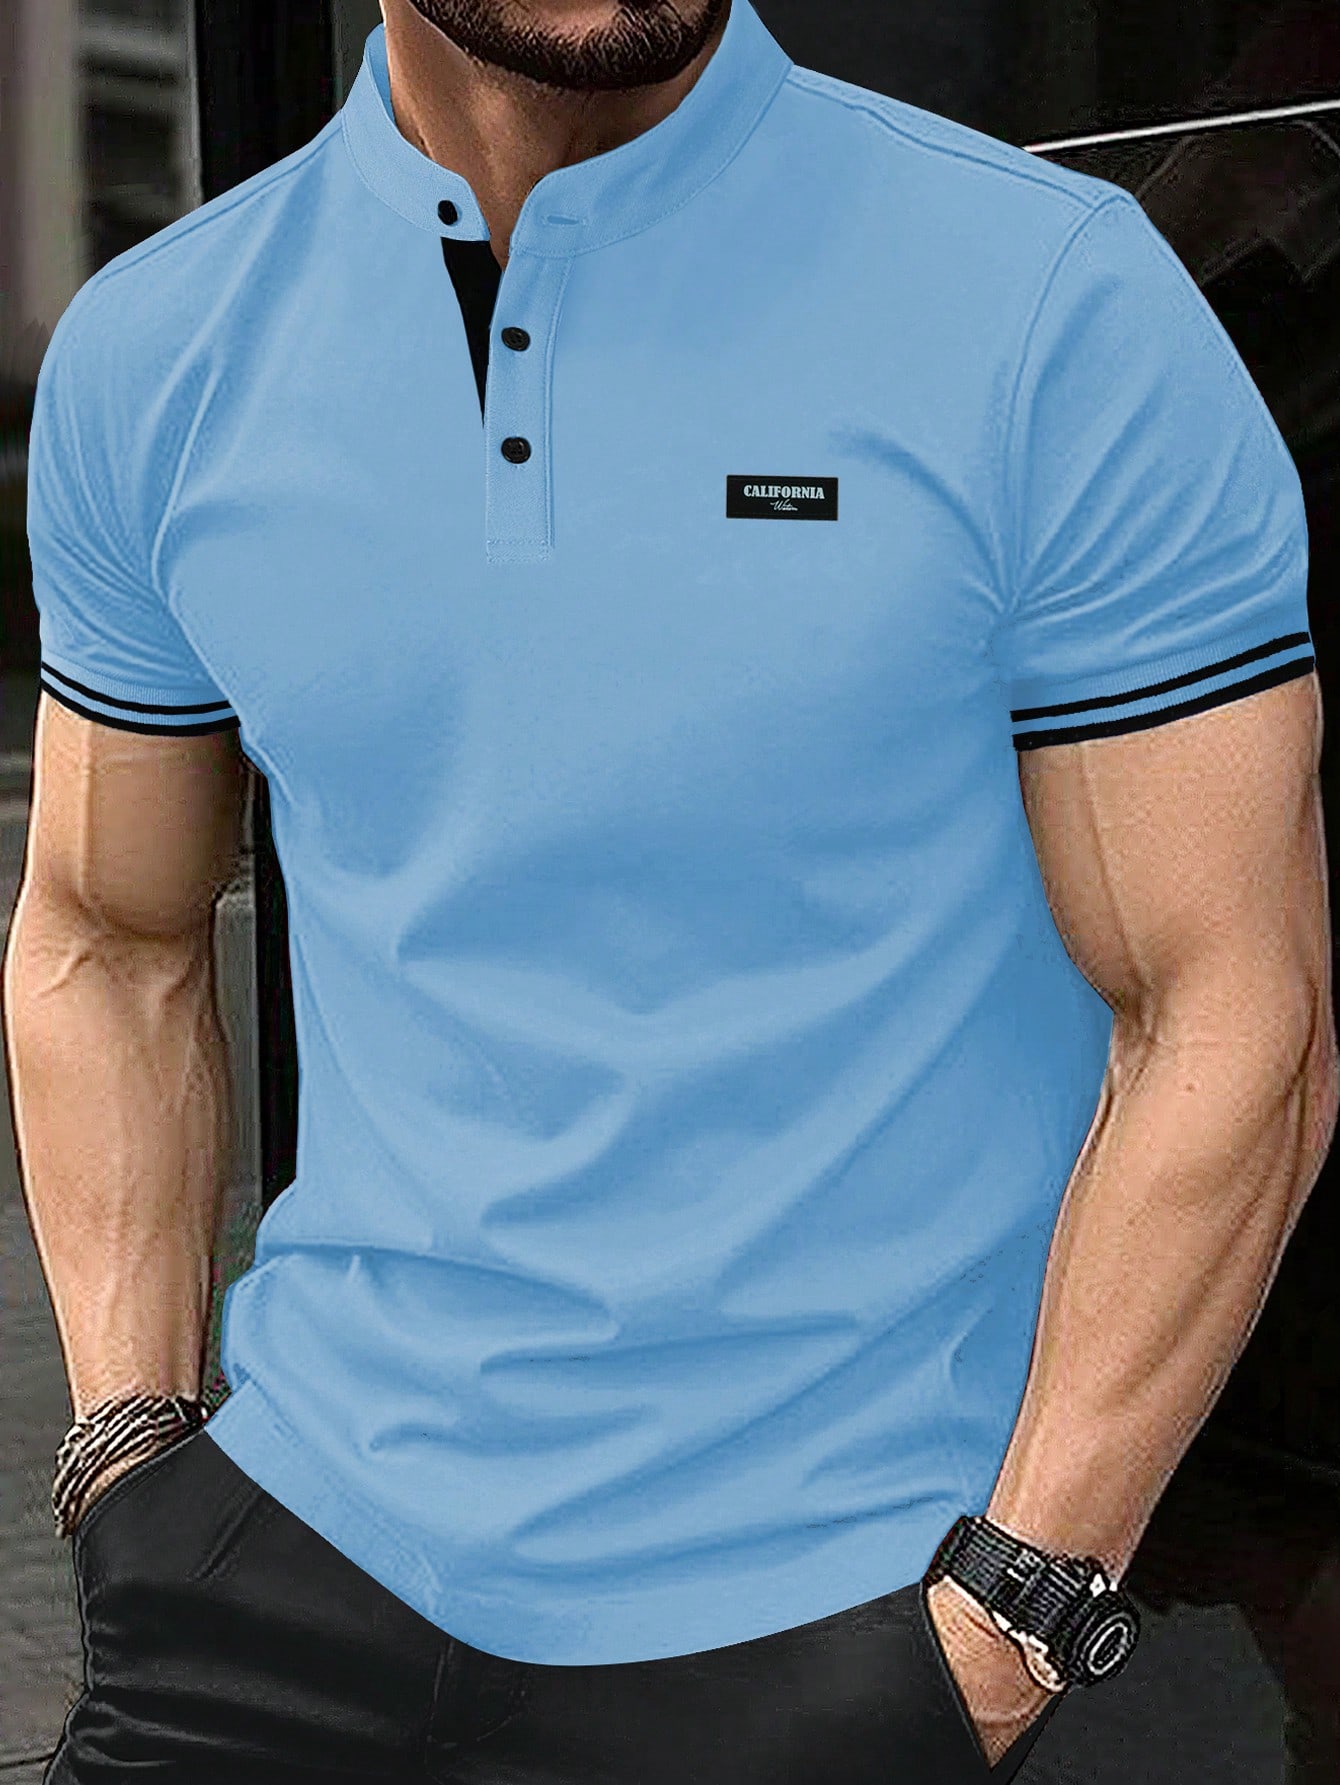 Мужская рубашка-поло с коротким рукавом и планкой на пуговицах Manfinity Homme, синий мужская футболка поло diva teks синяя dtd 10